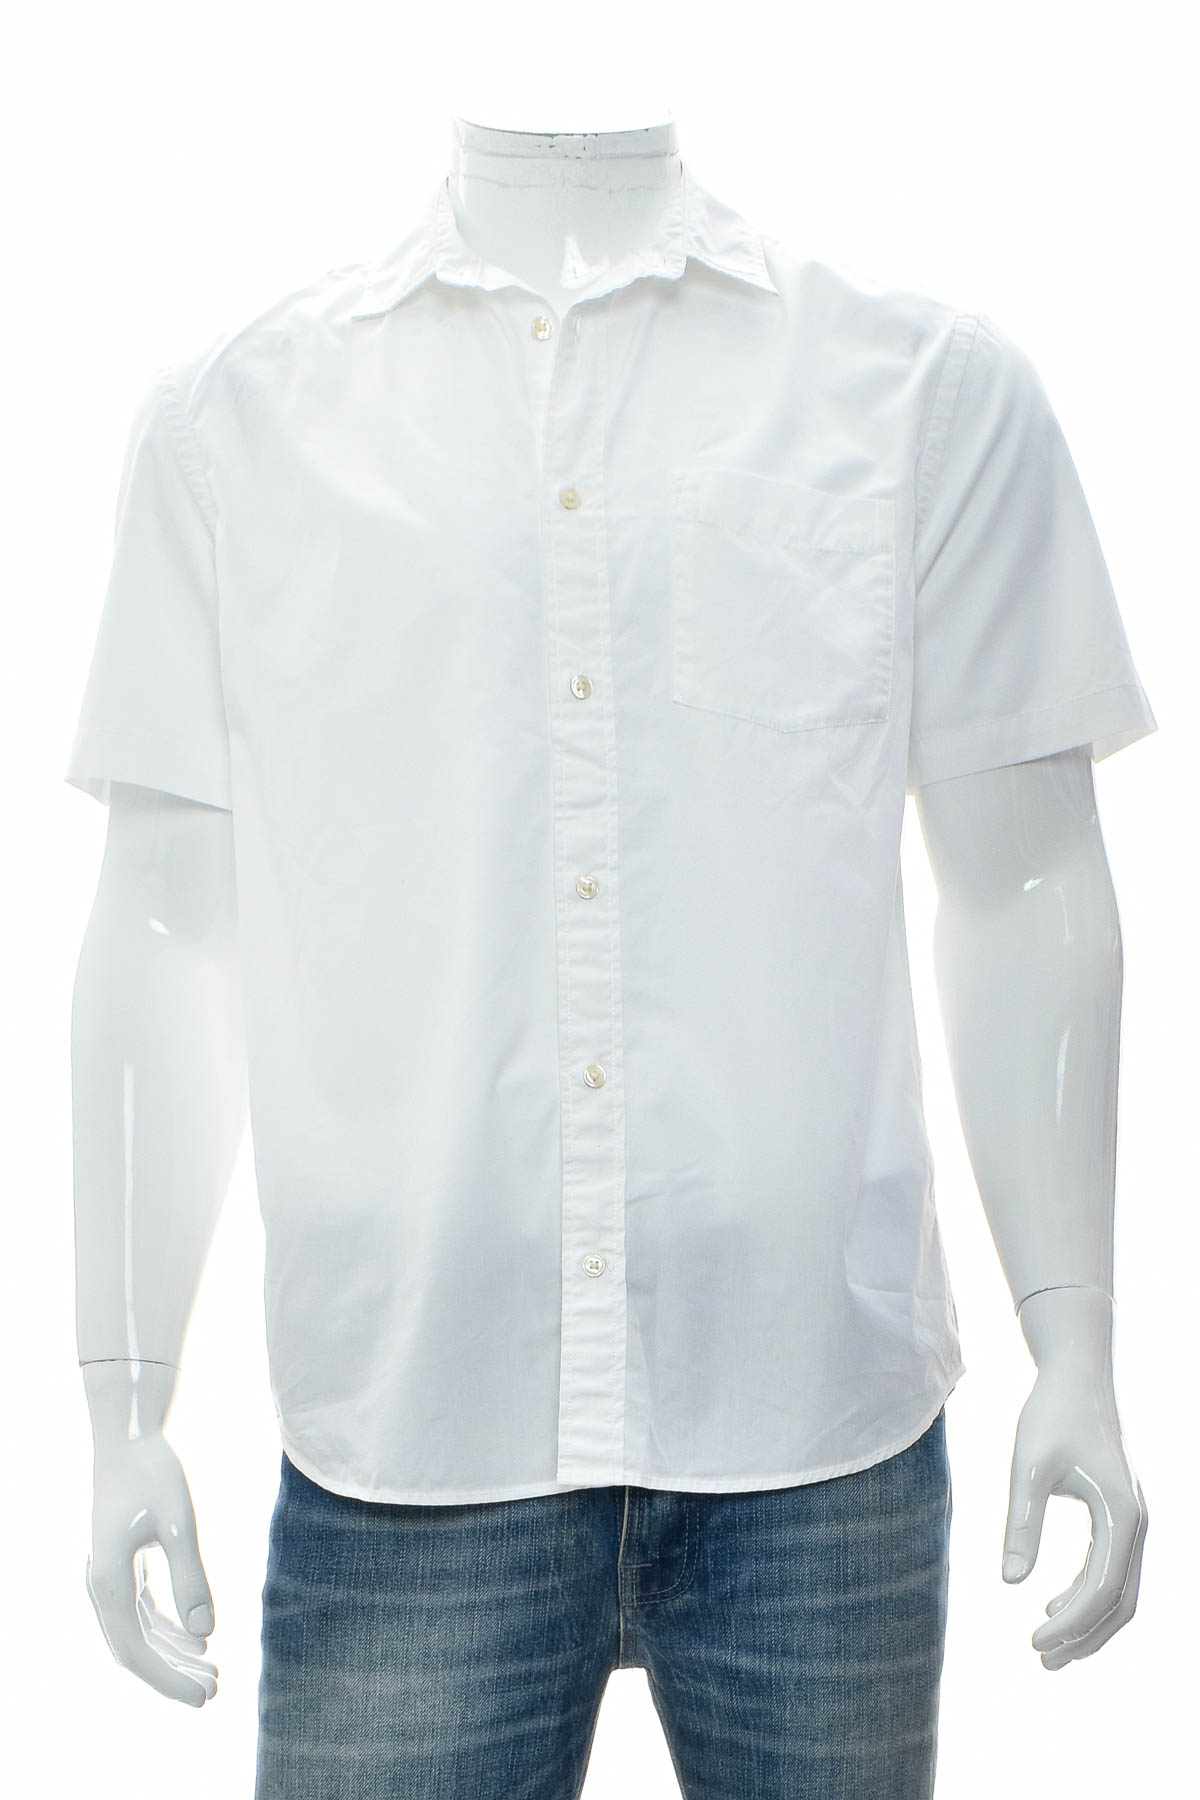 Ανδρικό πουκάμισο - H&M - 0